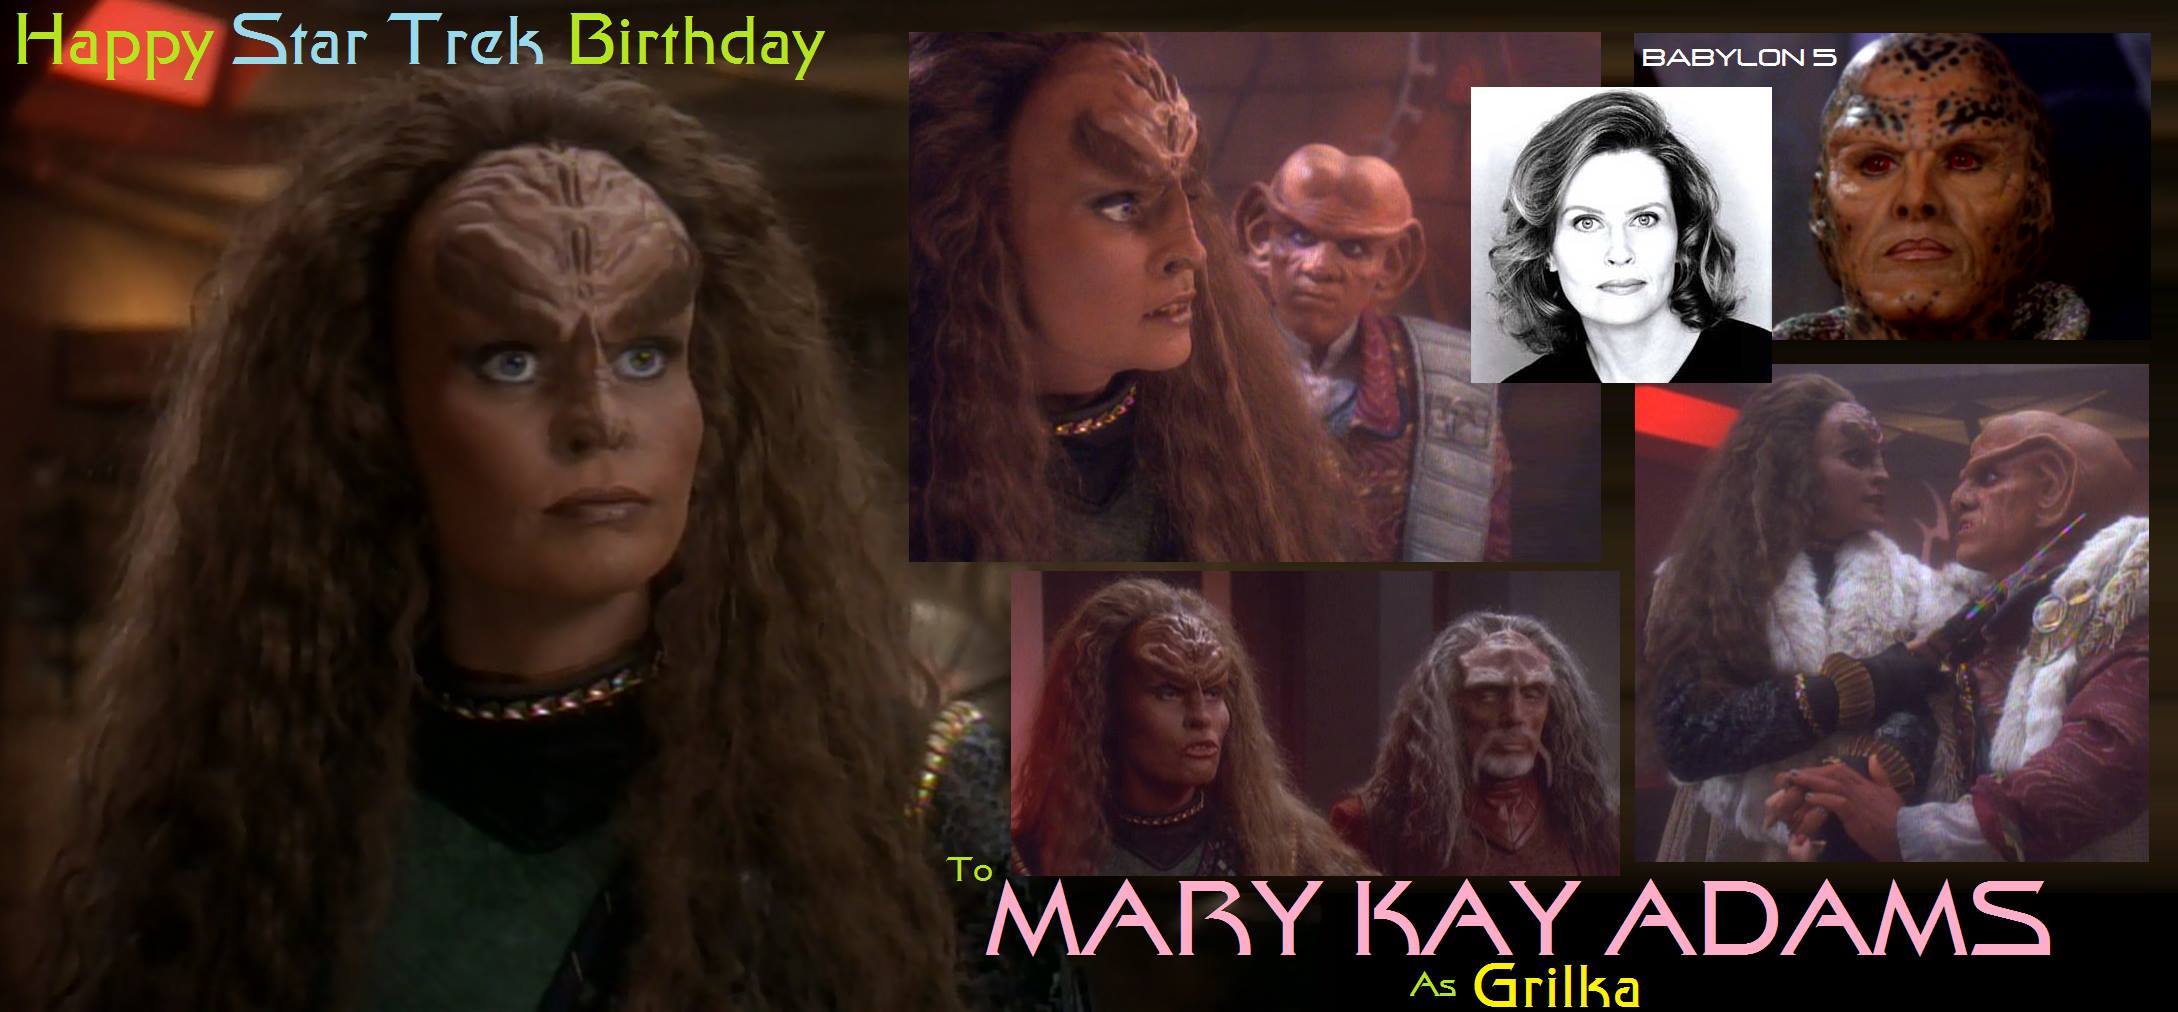 Mary Kay Adams was born September 9, 1962. 